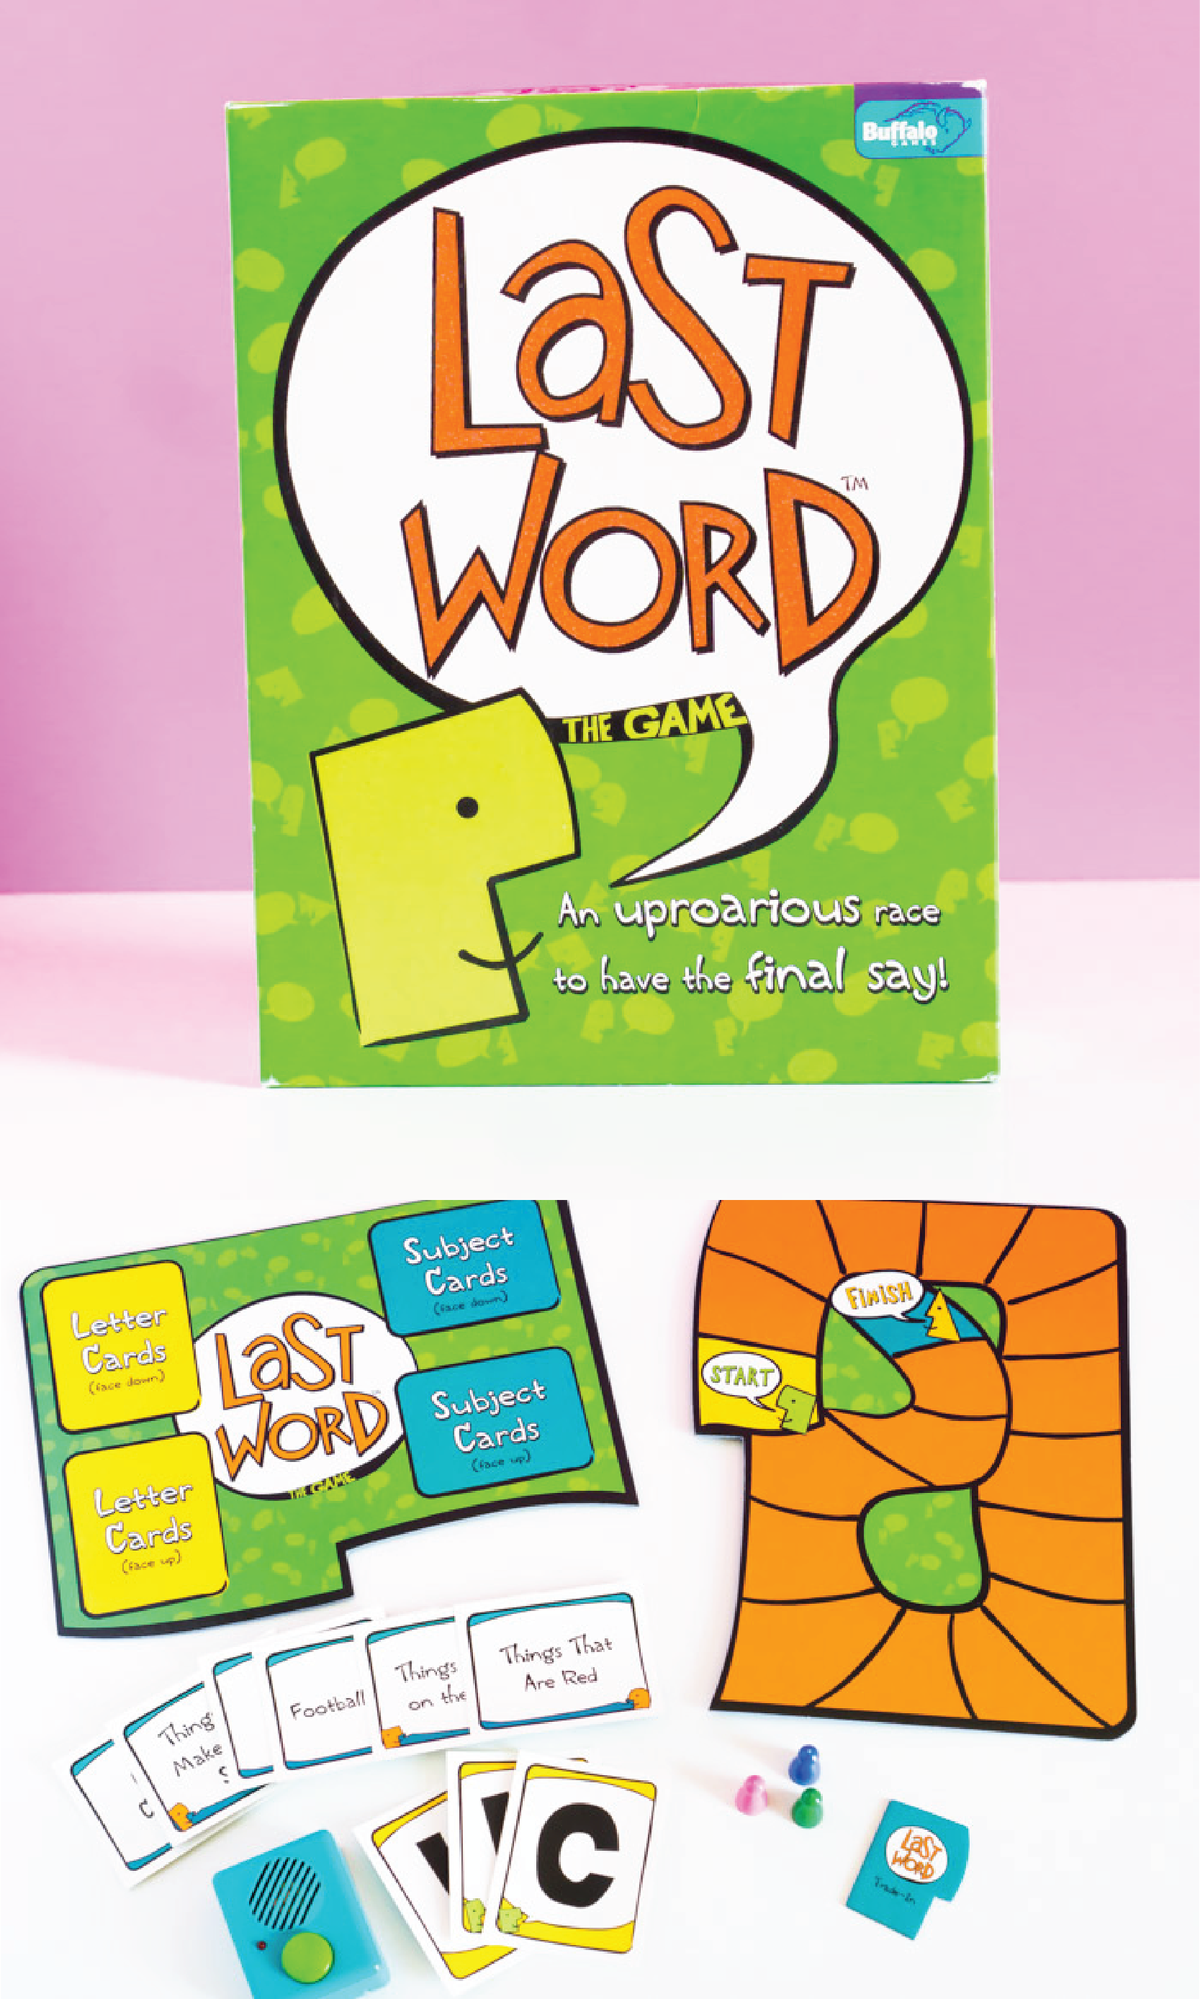 Το Last Word θα είναι ένα από τα αγαπημένα σας διασκεδαστικά παιχνίδια για ενήλικες